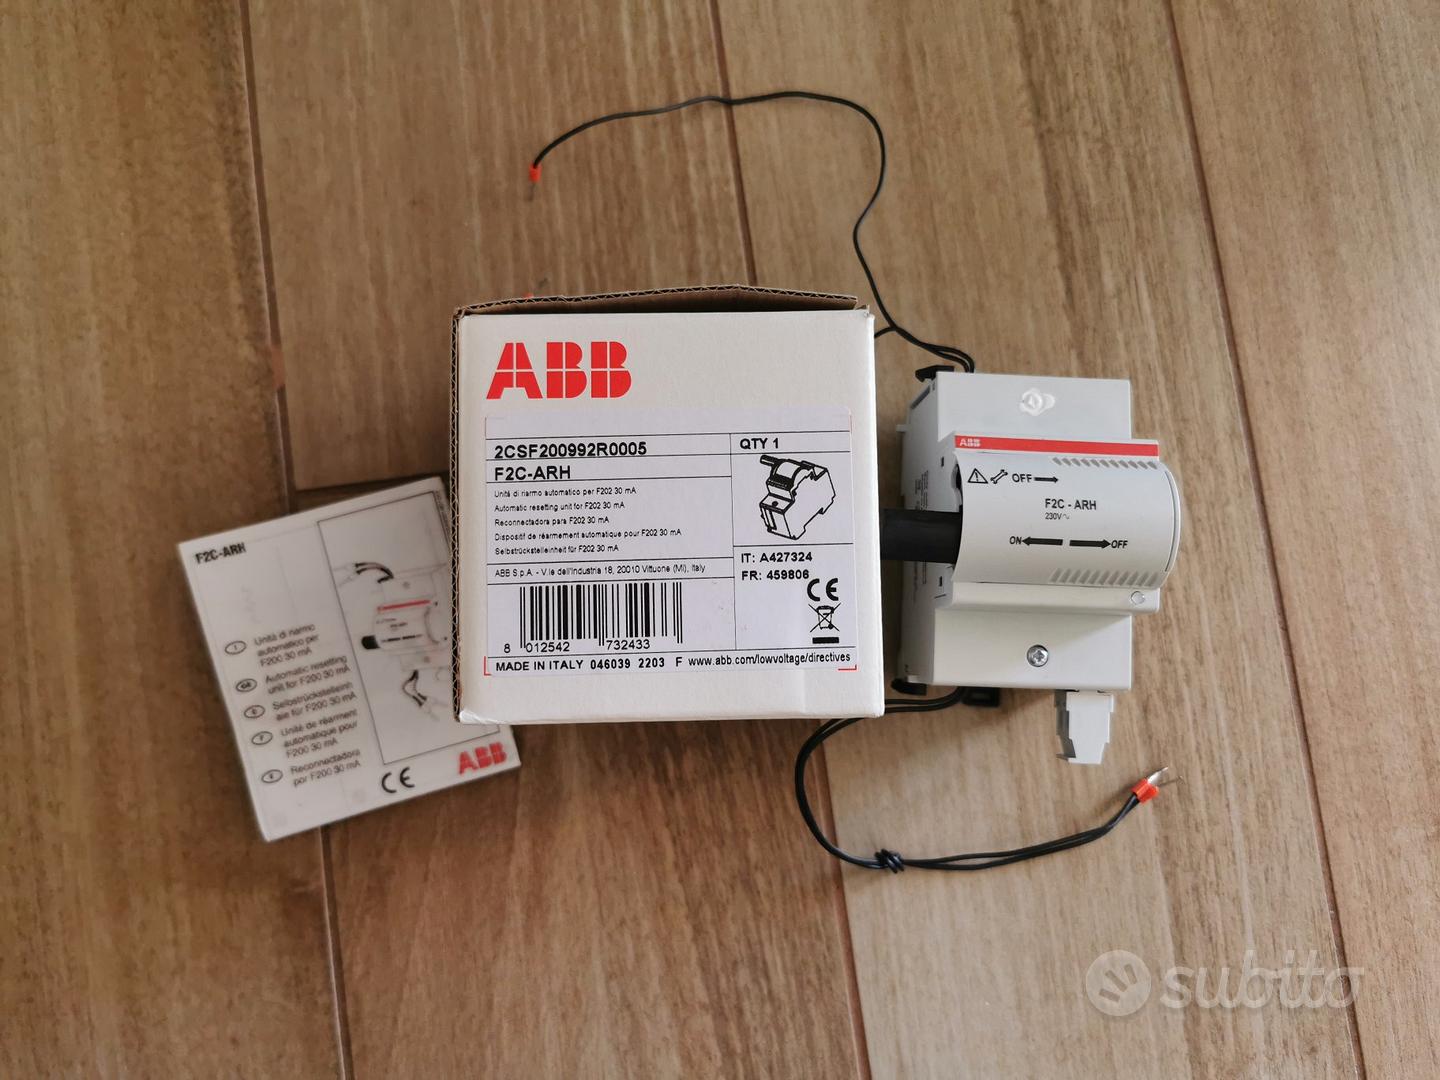 ABB F2C-ARH riarmo automatico - Elettrodomestici In vendita a Lecce